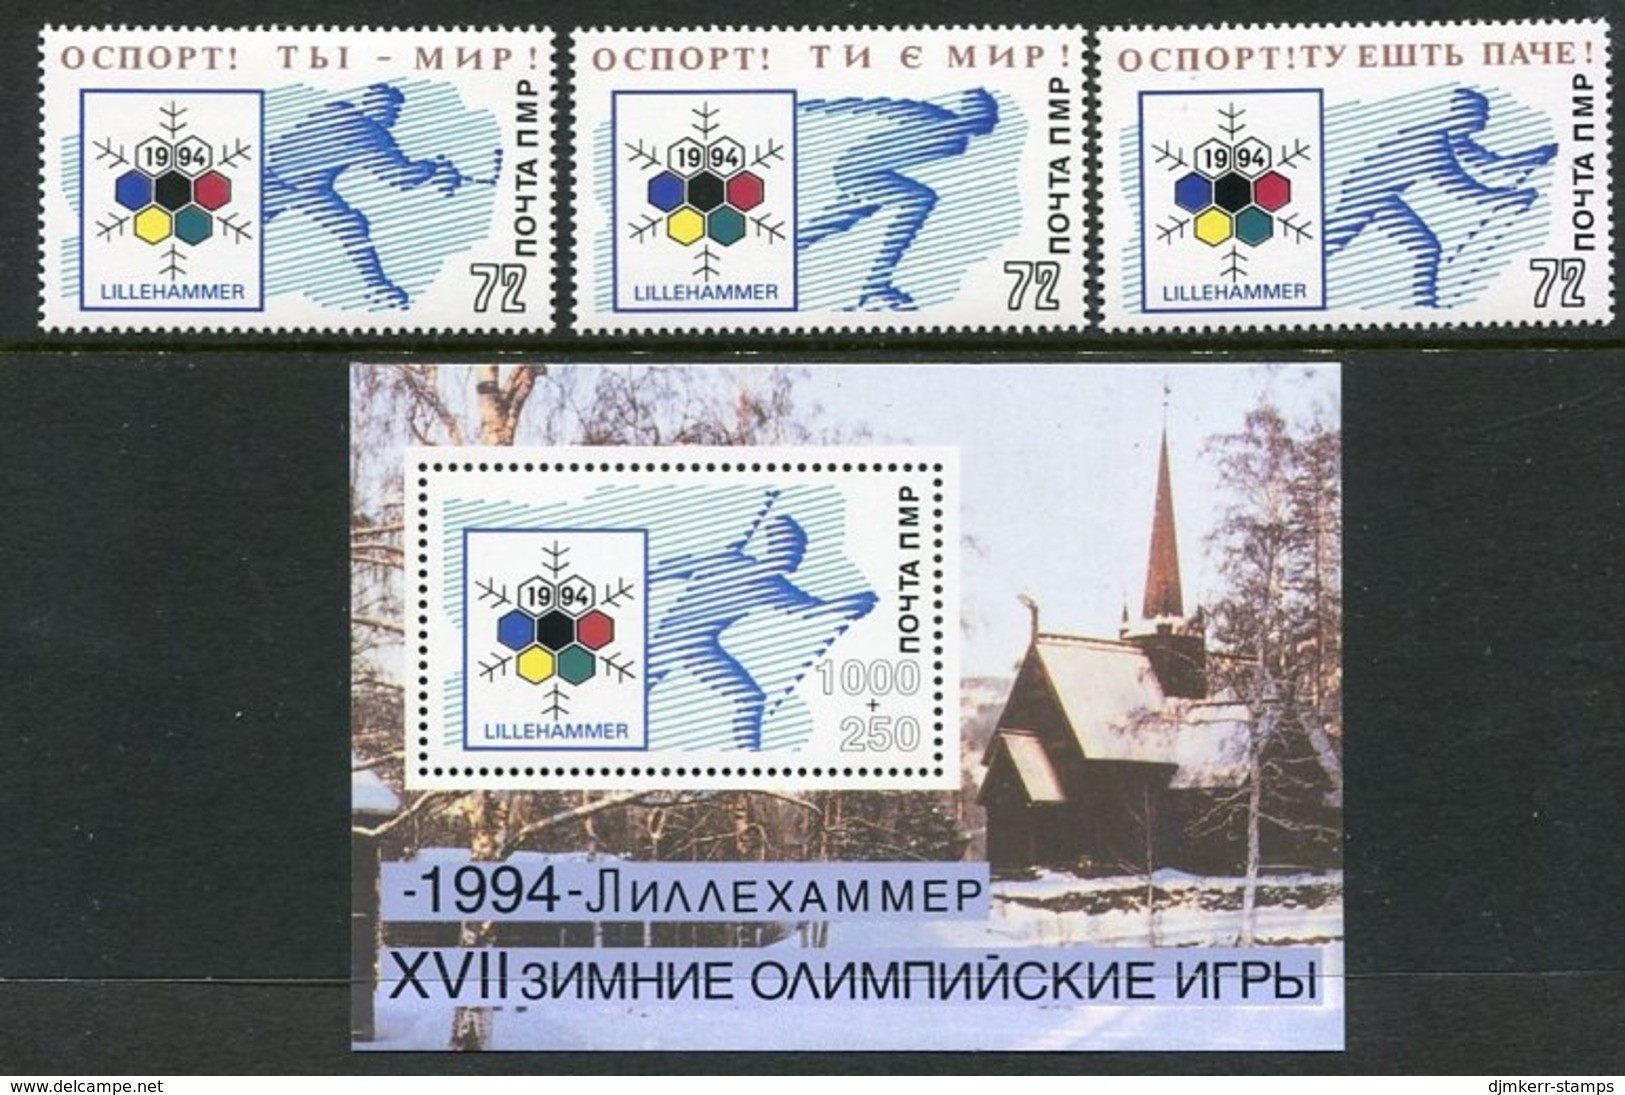 MOLDOVA PMR 1994 Winter Olympics Lillehammer  MNH / **. - Moldavie